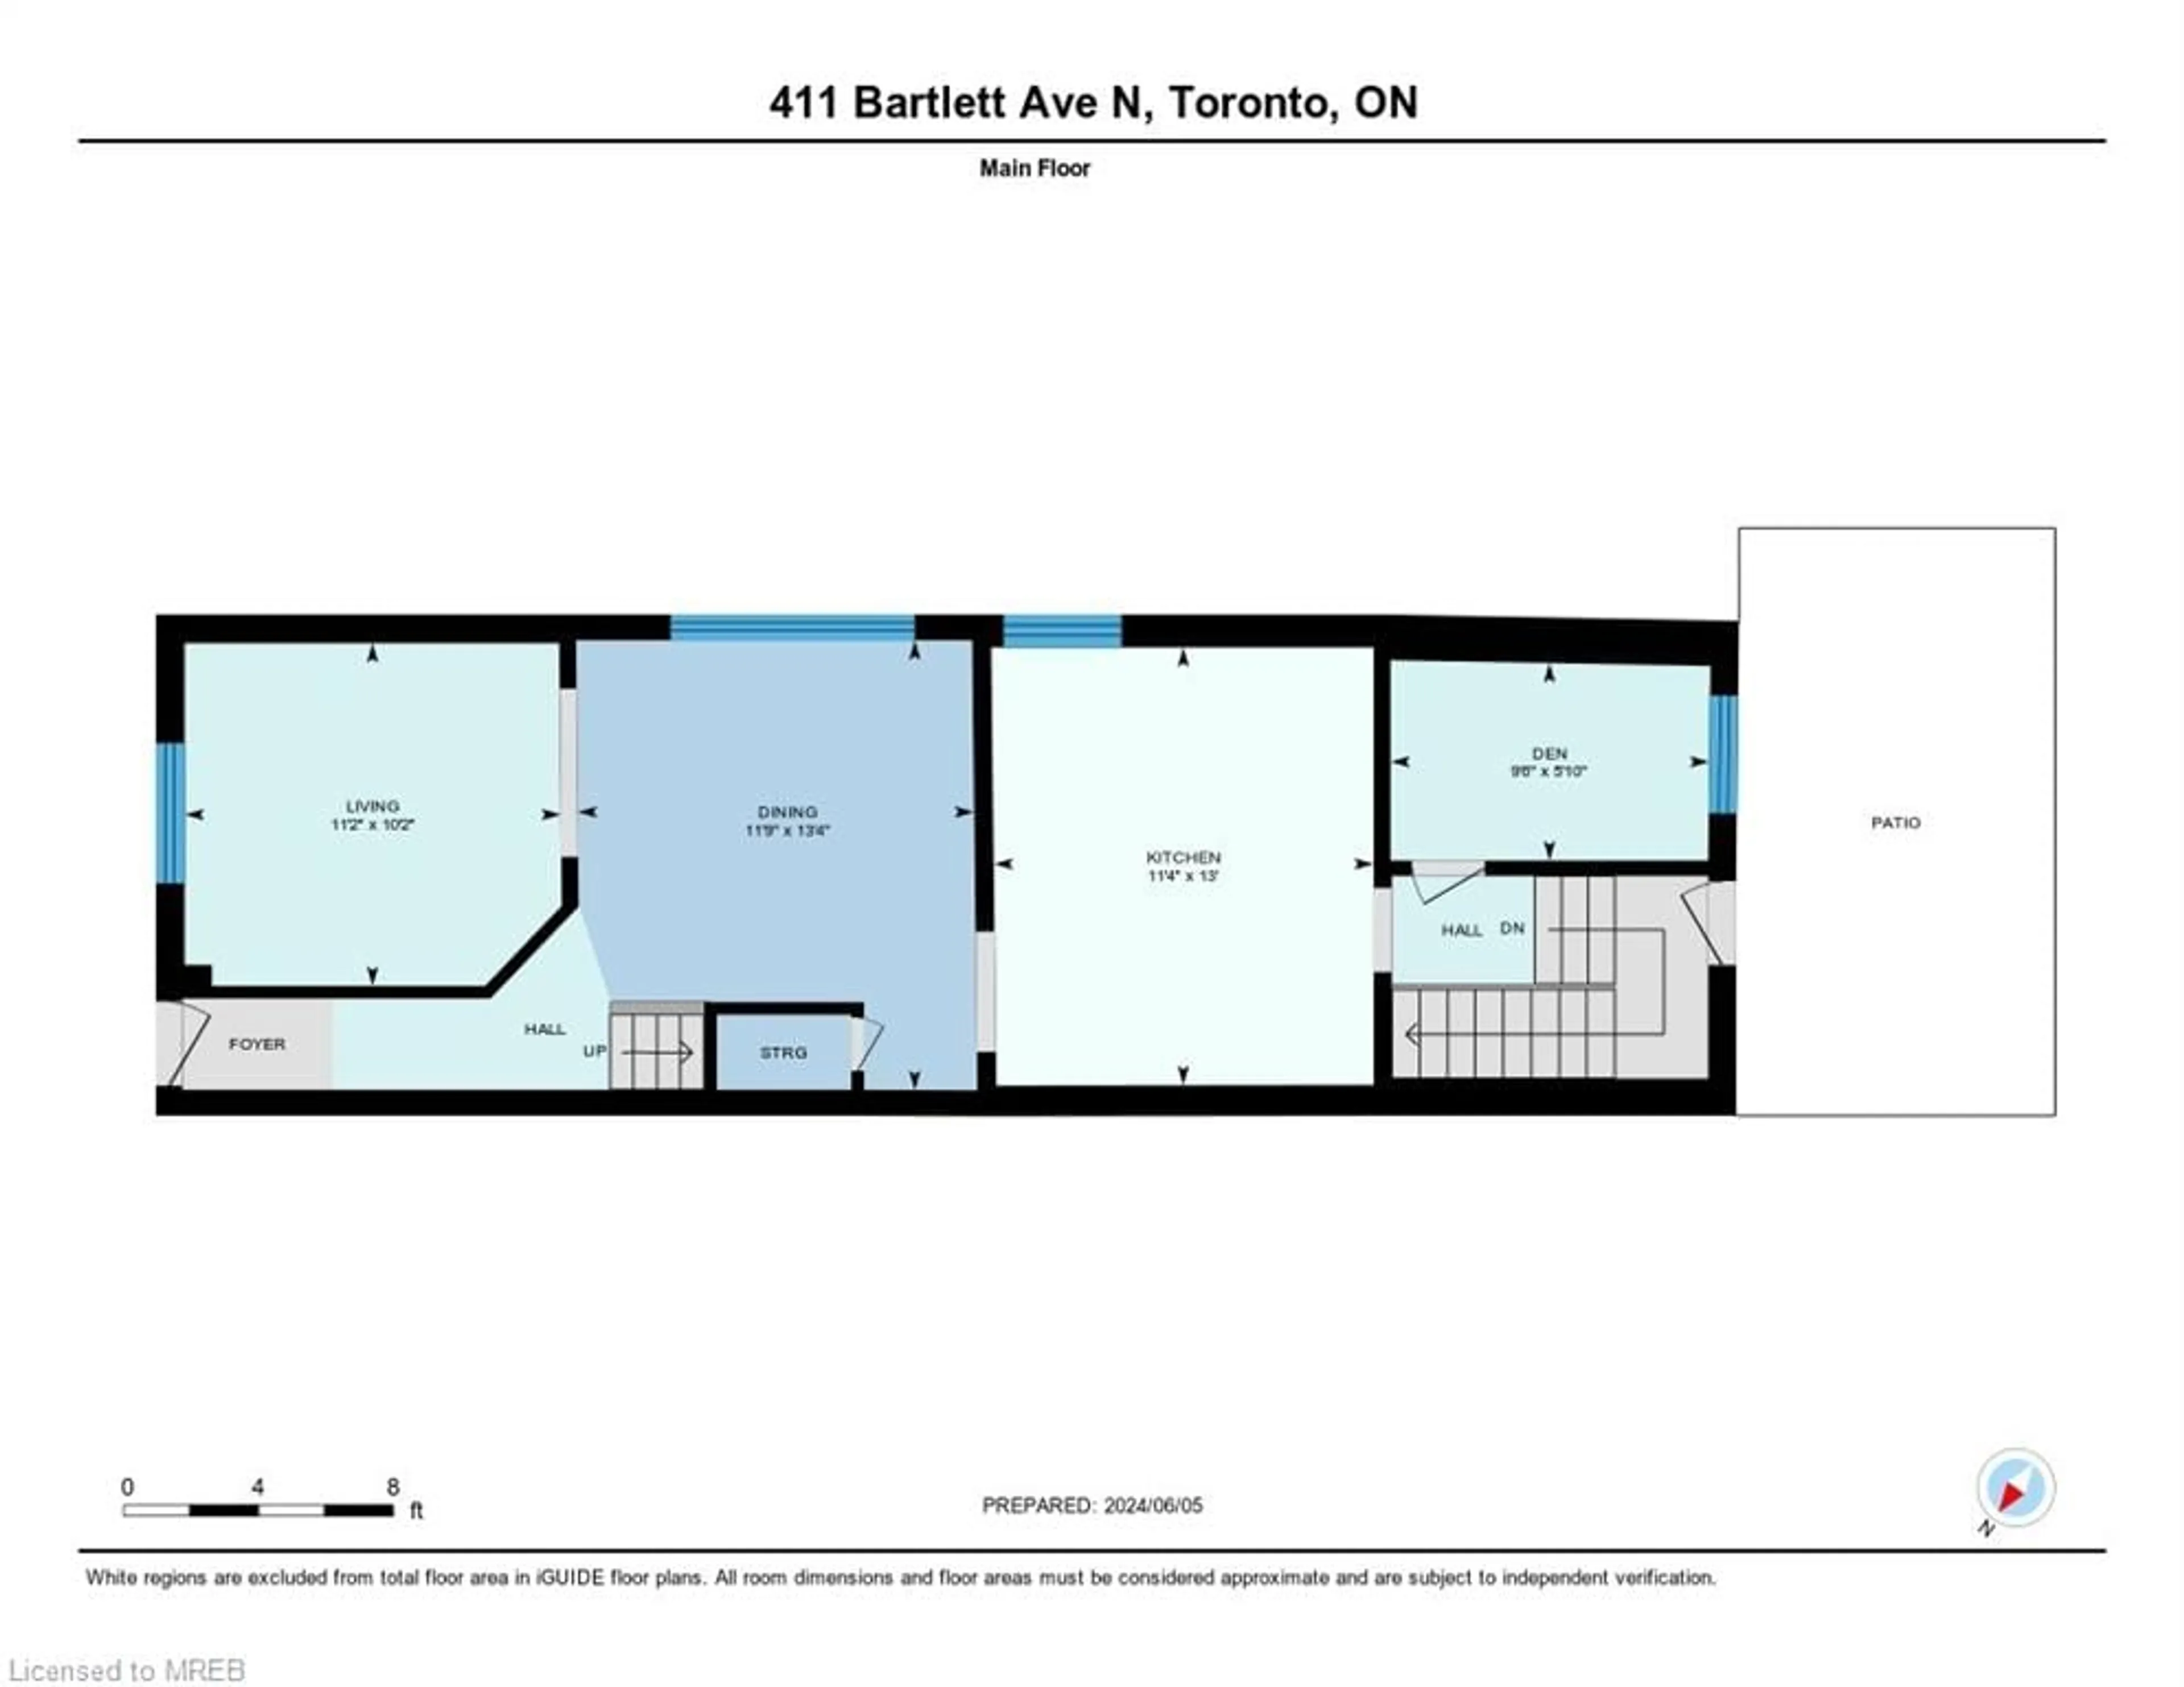 Floor plan for 411 Bartlett Ave, Toronto Ontario M6H 3G8